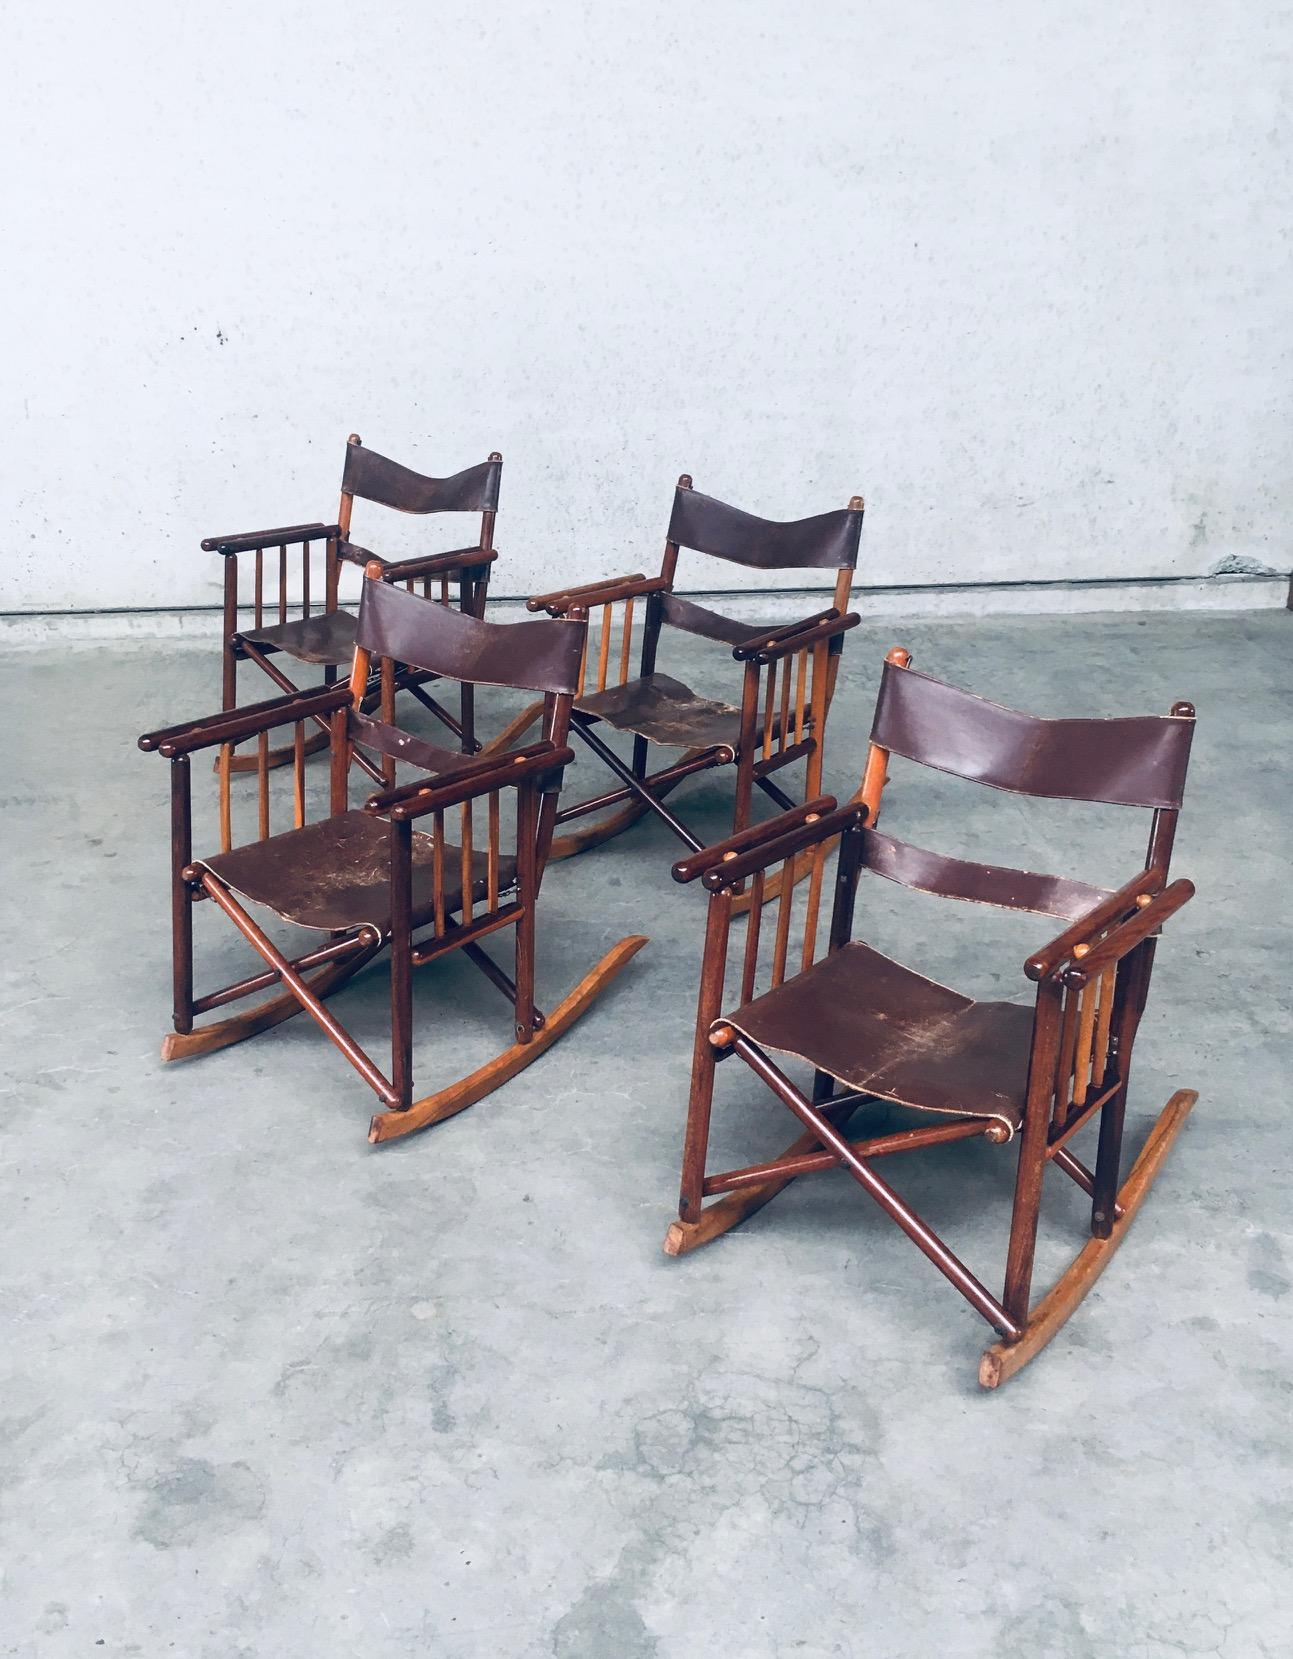 Vintage original Midcentury Costa Rican Folding Safari Campaign Rocking Chair set of 4. Fabriqué au Costa Rica, 1950's / 60's. Cadre construit en bois dur exotique avec des sangles en cuir brun pour le soutien du dos et un siège en cuir brun. Les